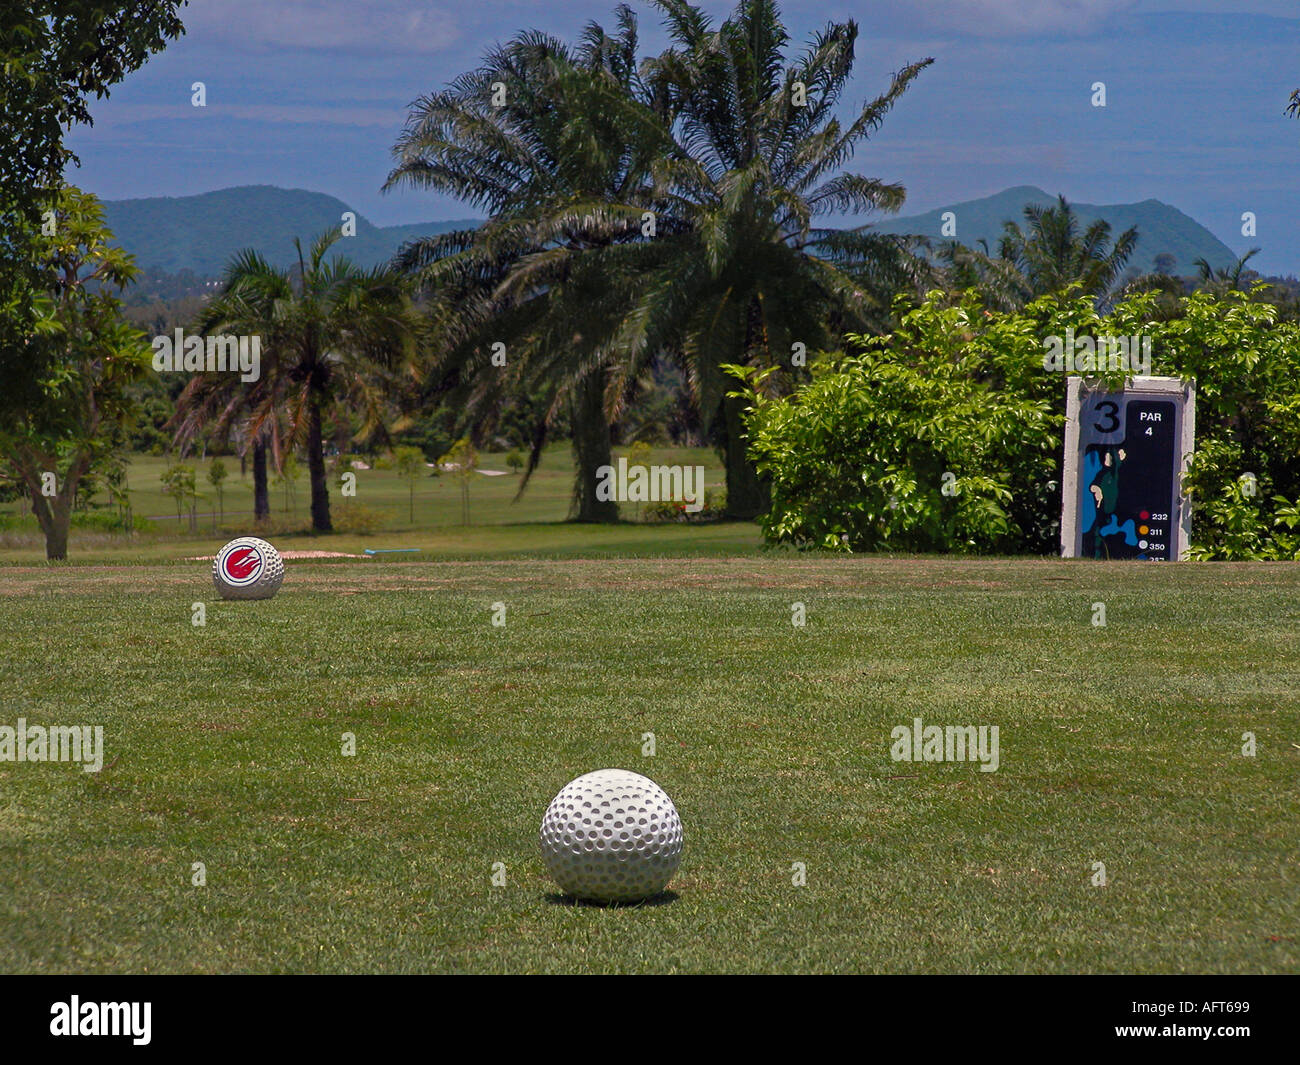 Phoenix Golf and Country Club, Pattaya Thailande, d'arbustes et de palmiers au bord de green, les montagnes dans la distance. Numéro vert à 3 trous par 4. Banque D'Images